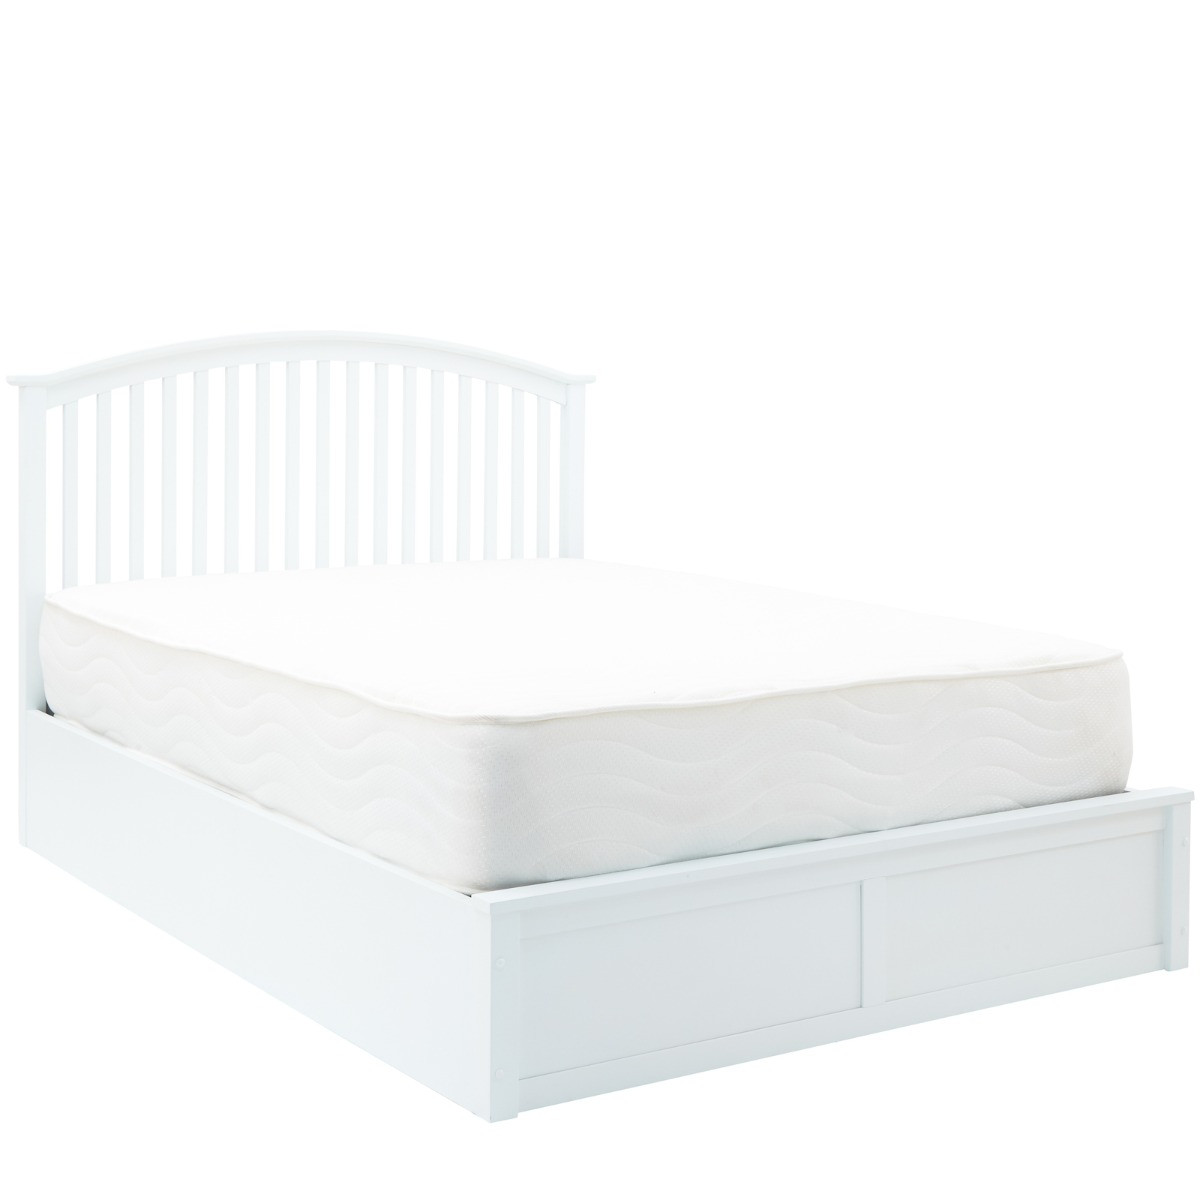 Madrid Wooden Ottoman Storage Bed - White>